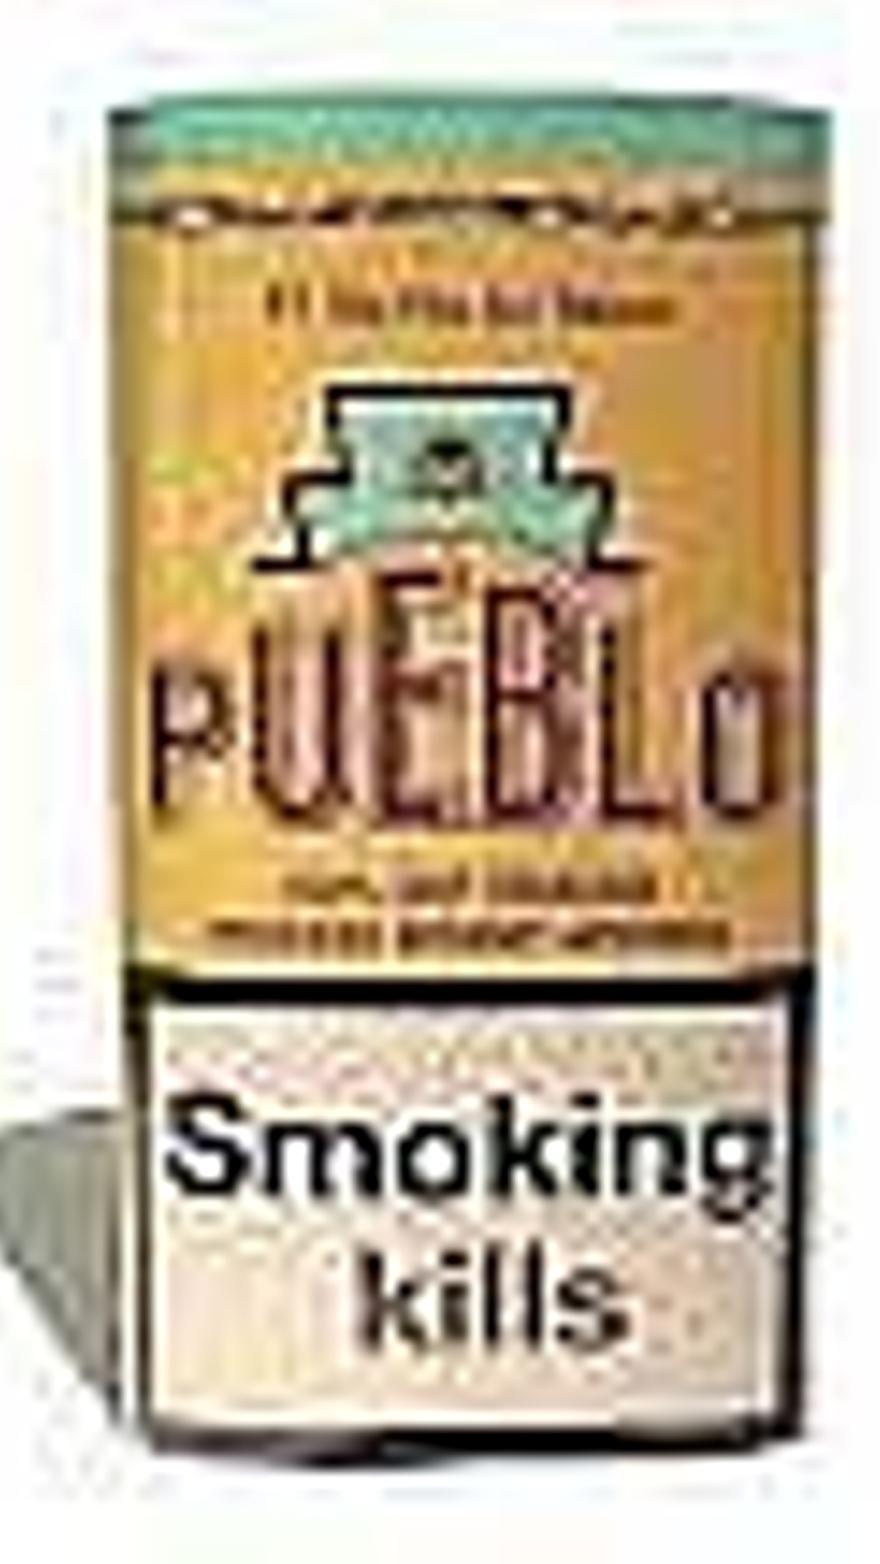 Una bolsa de picadura dobla los cigarros de un paquete a mitad de precio  Cajetillas VS tabaco de liar - La Nueva España